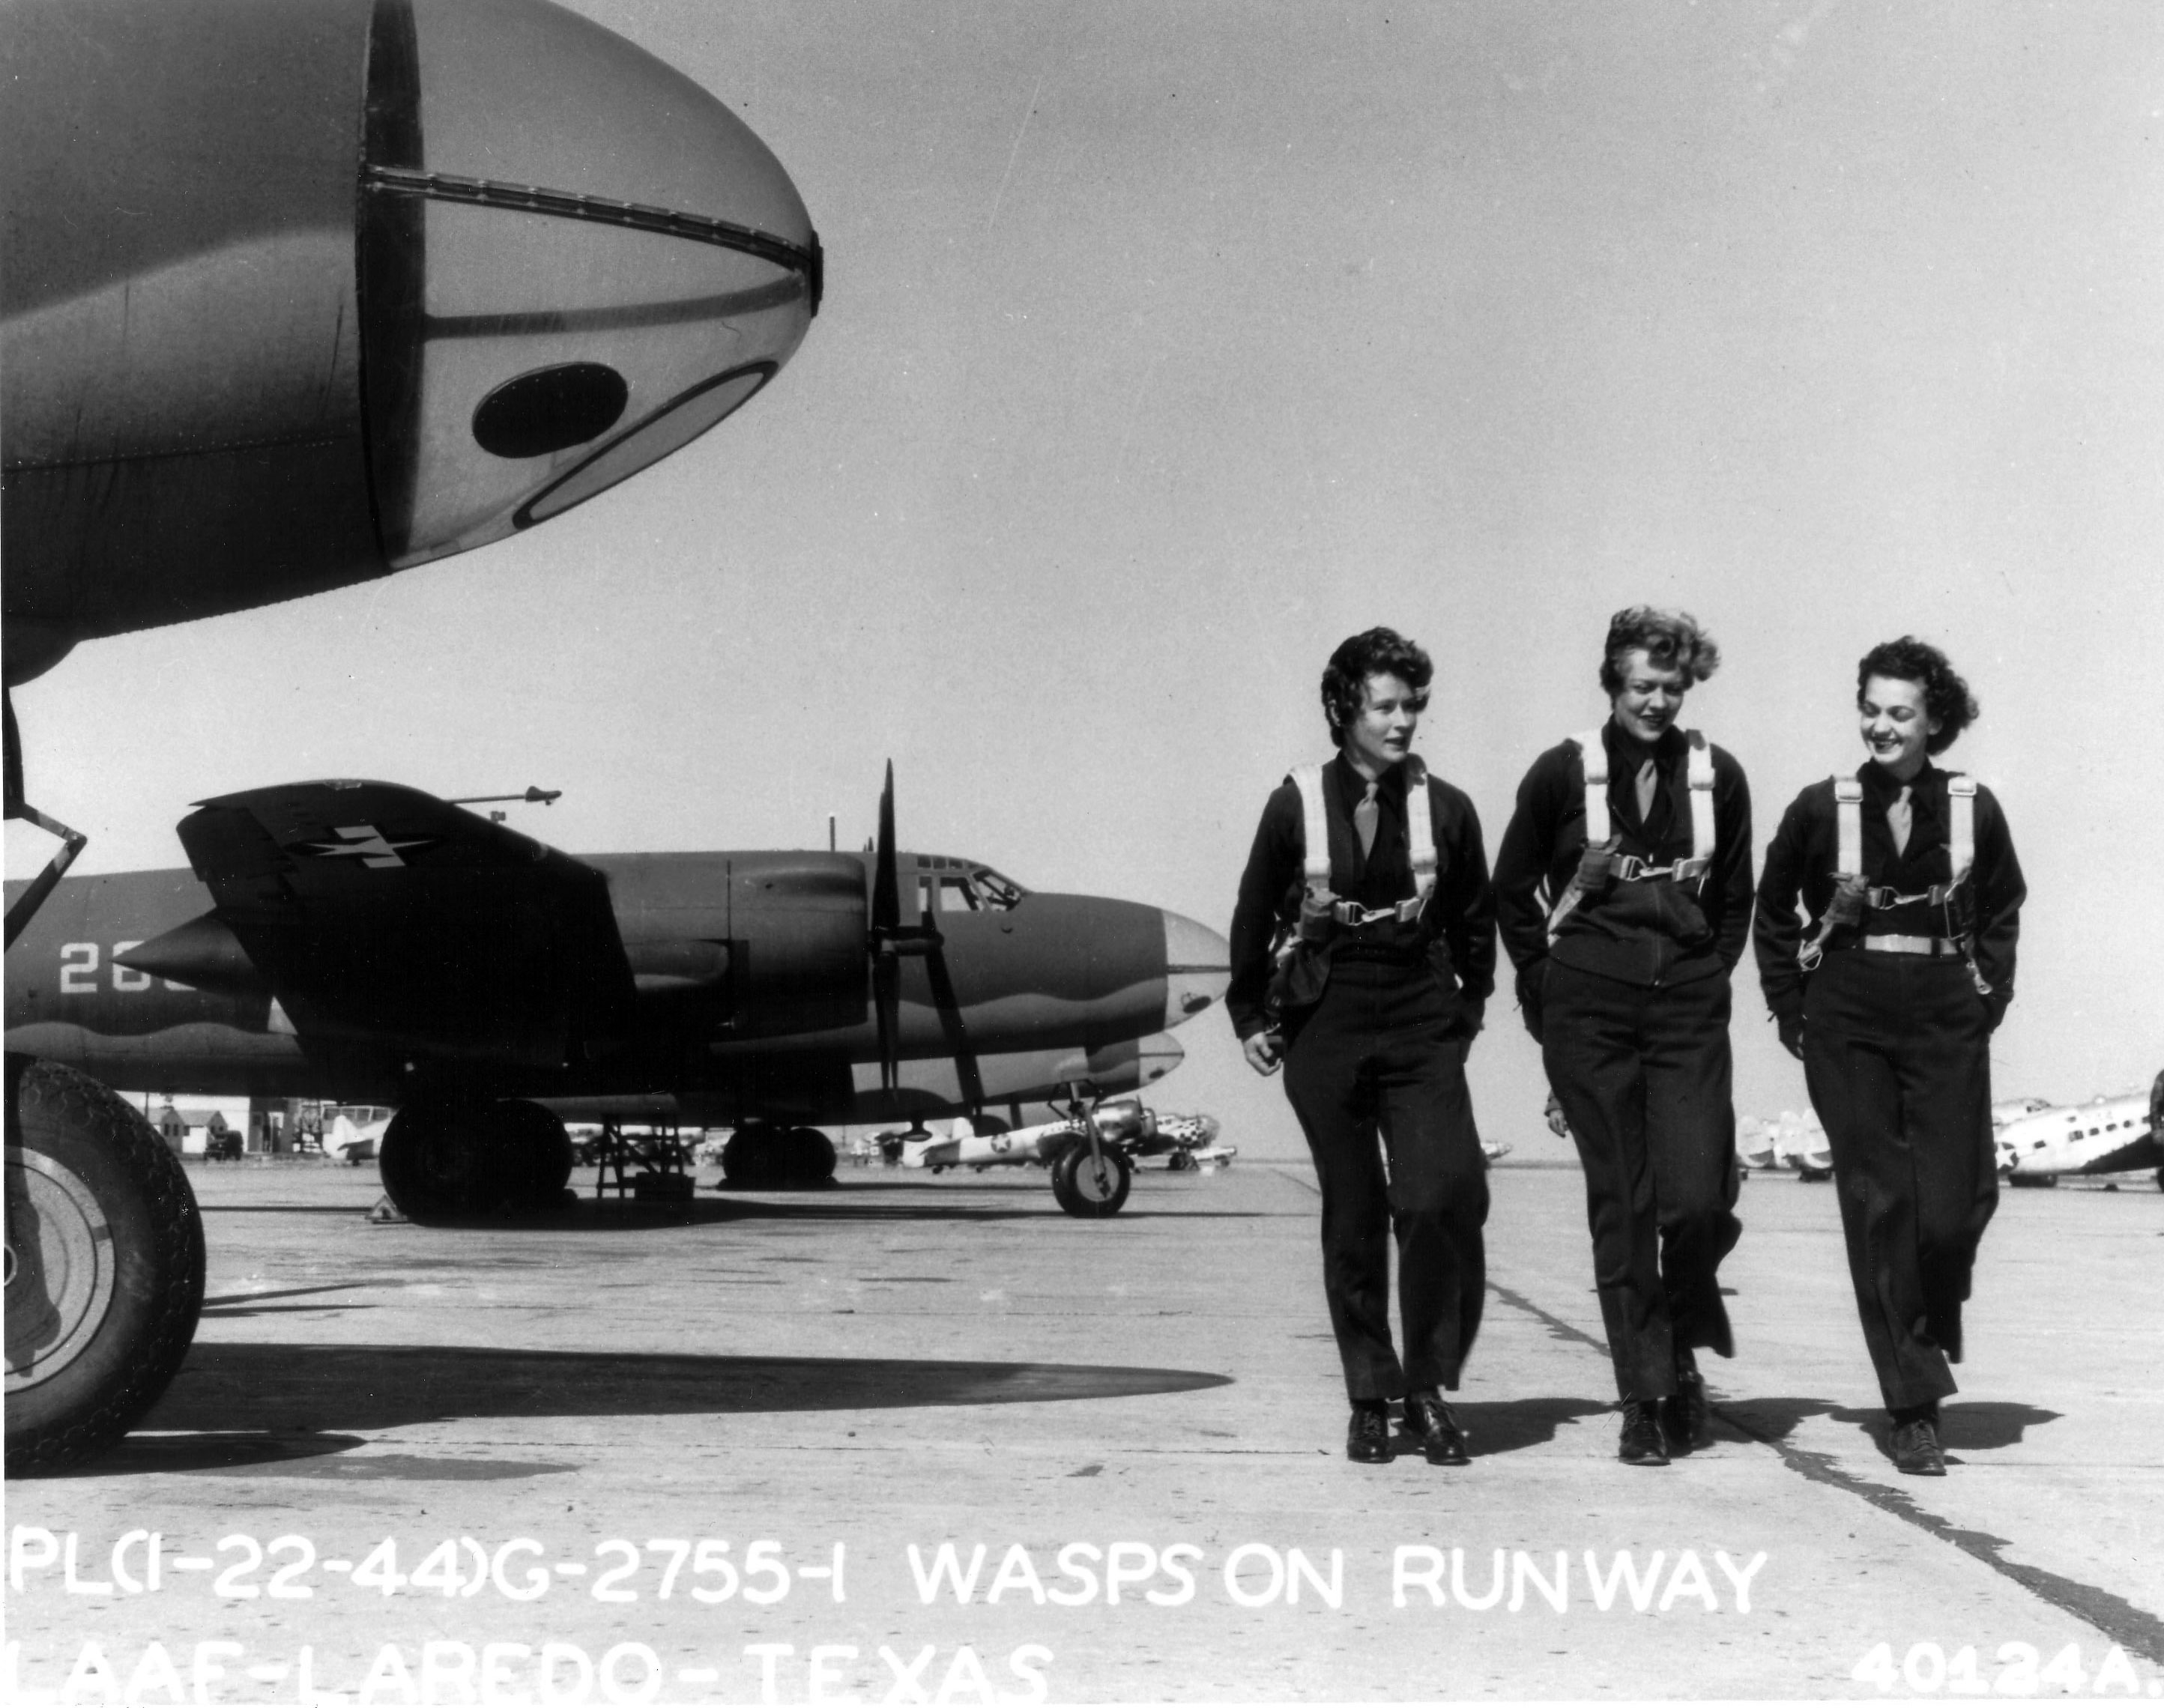 WASP pilots at Laredo Army Air Force Base, Texas, United States, 22 Jan 1944; note B-26 Marauder, AT-6 Texan, and C-56 Lodestar aircraft in background